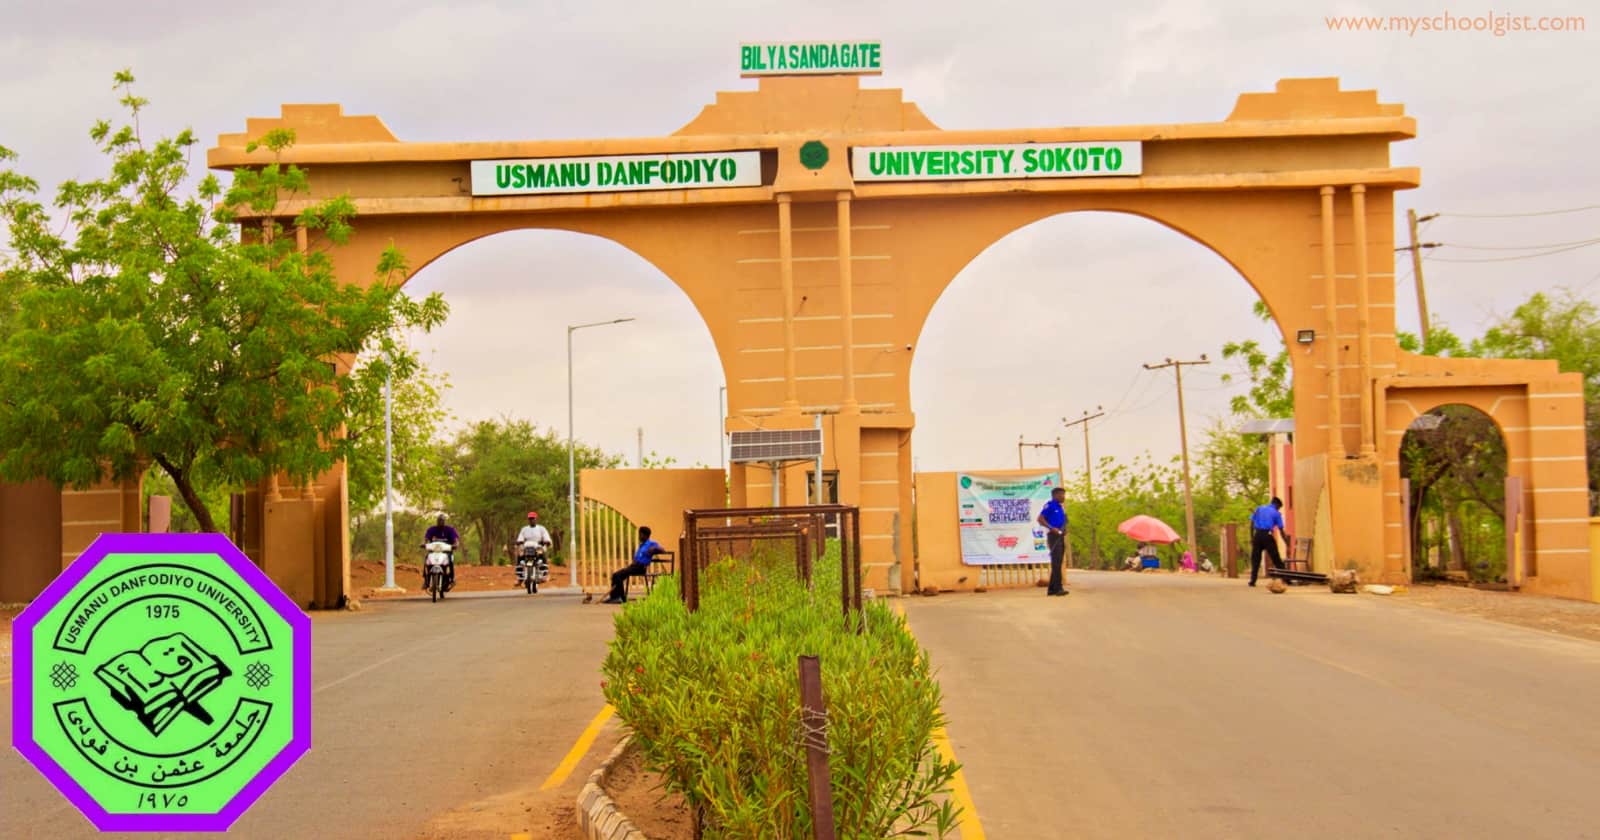 Usmanu Danfodiyo University Sokoto (UDUSOK) Academic Calendar for 2022/2023 Academic Session